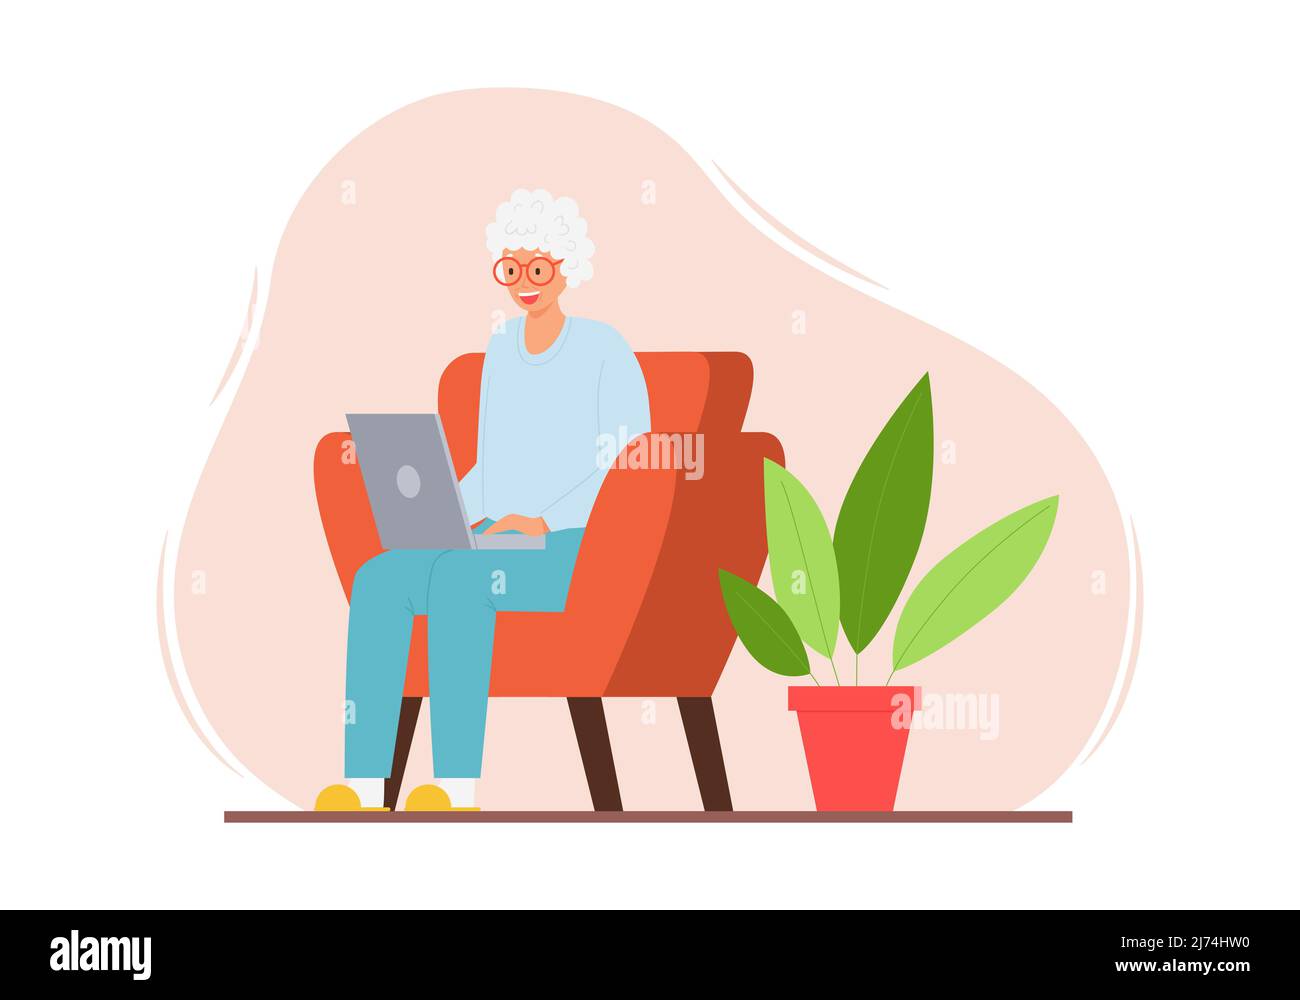 Una donna anziana felice è seduta in una sedia in un interno domestico con un laptop. Una sorridente nonna moderna adulta con capelli grigi utilizza un computer. Colore Illustrazione Vettoriale